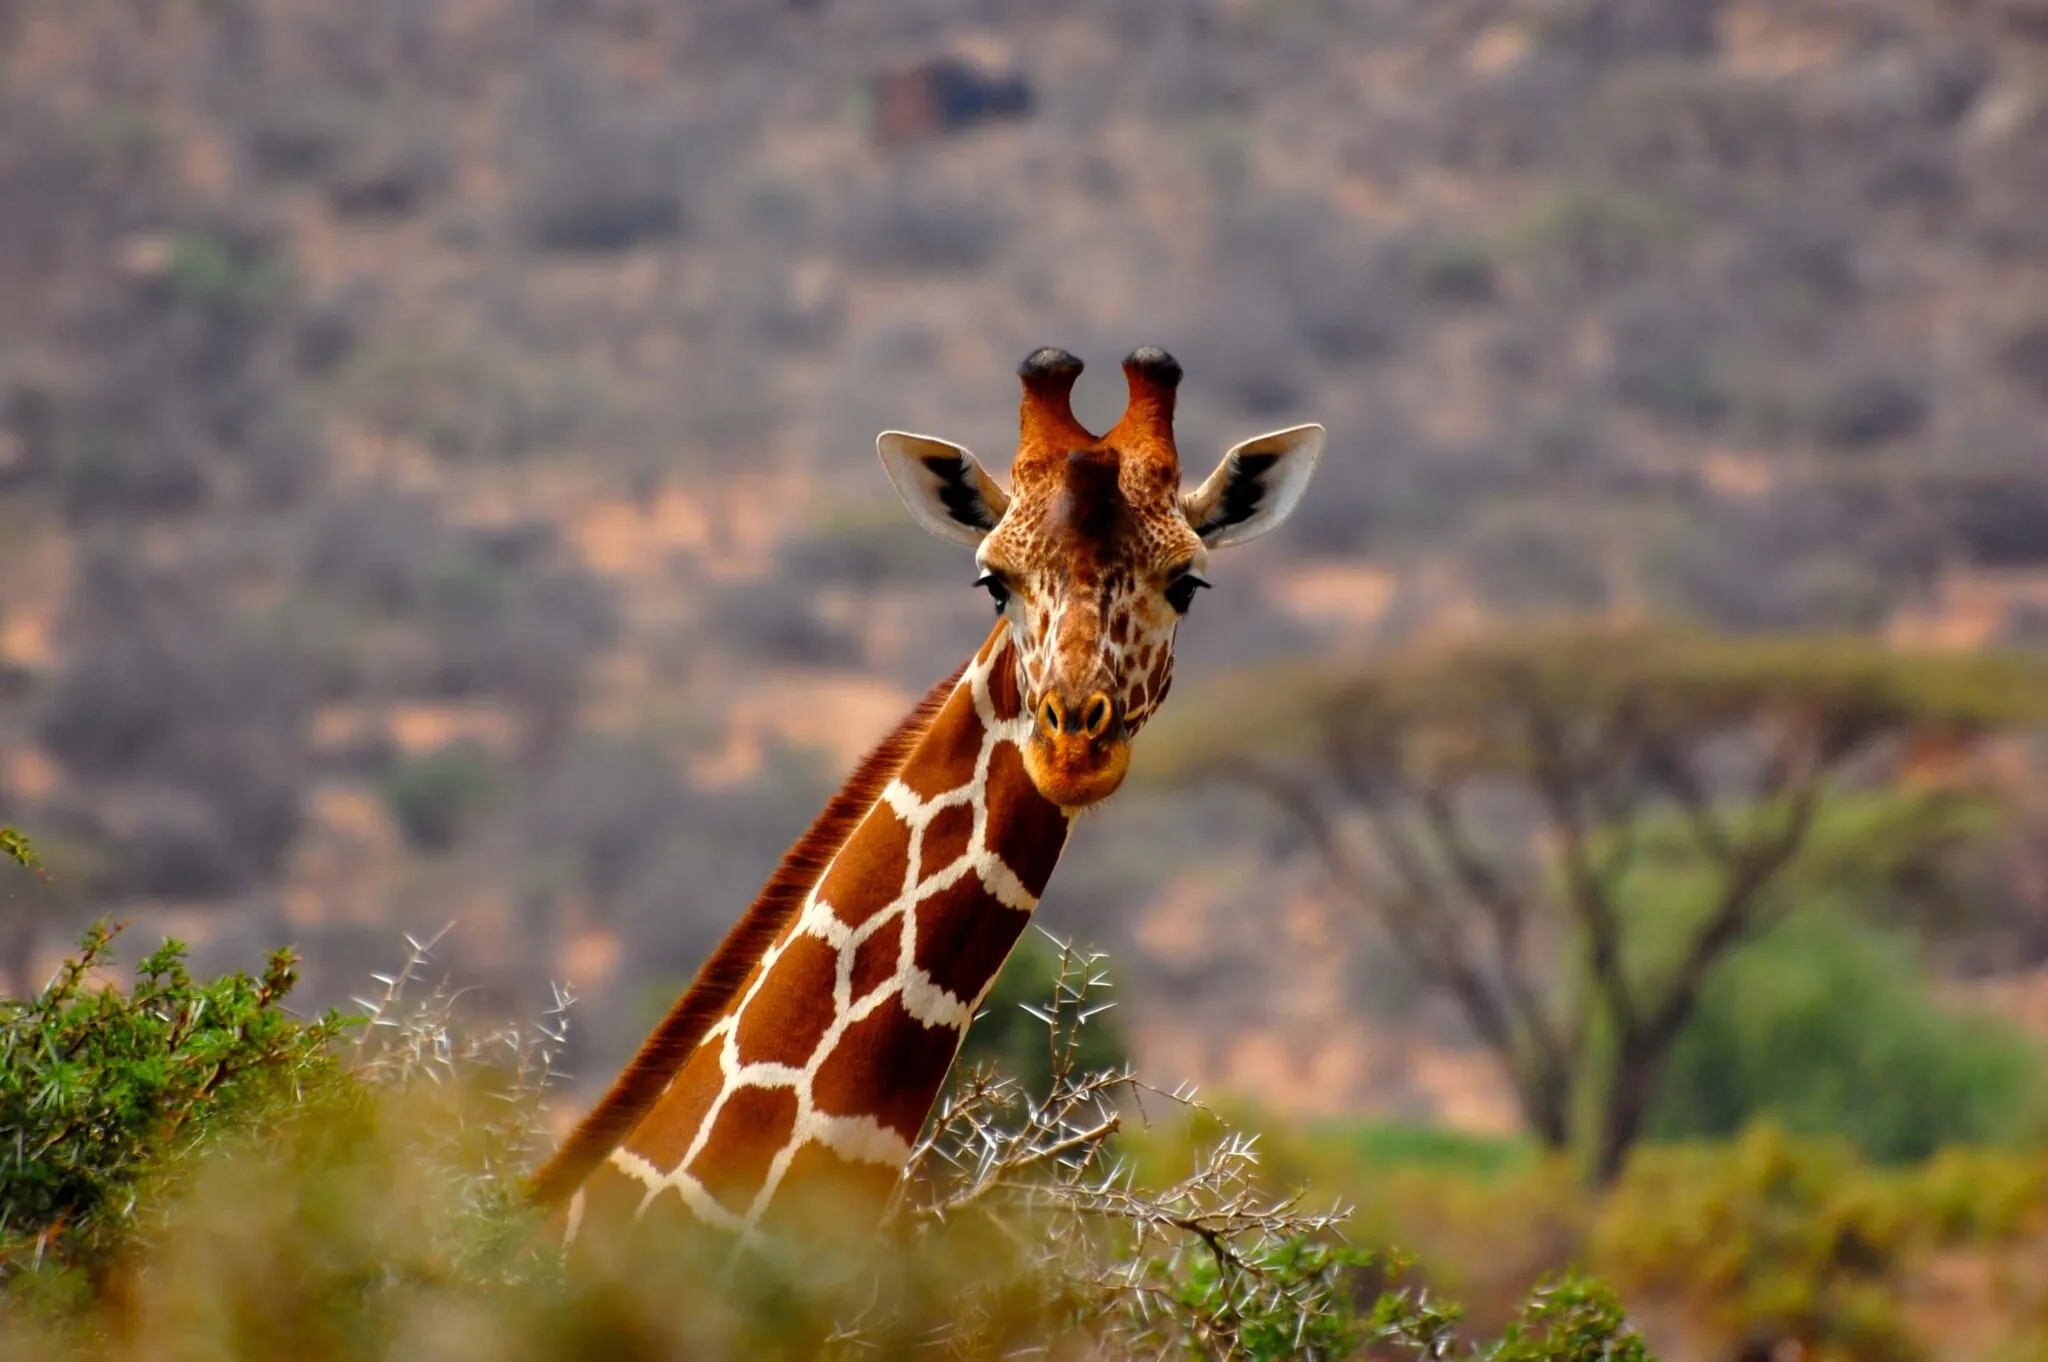 Kenya giraffe conservation